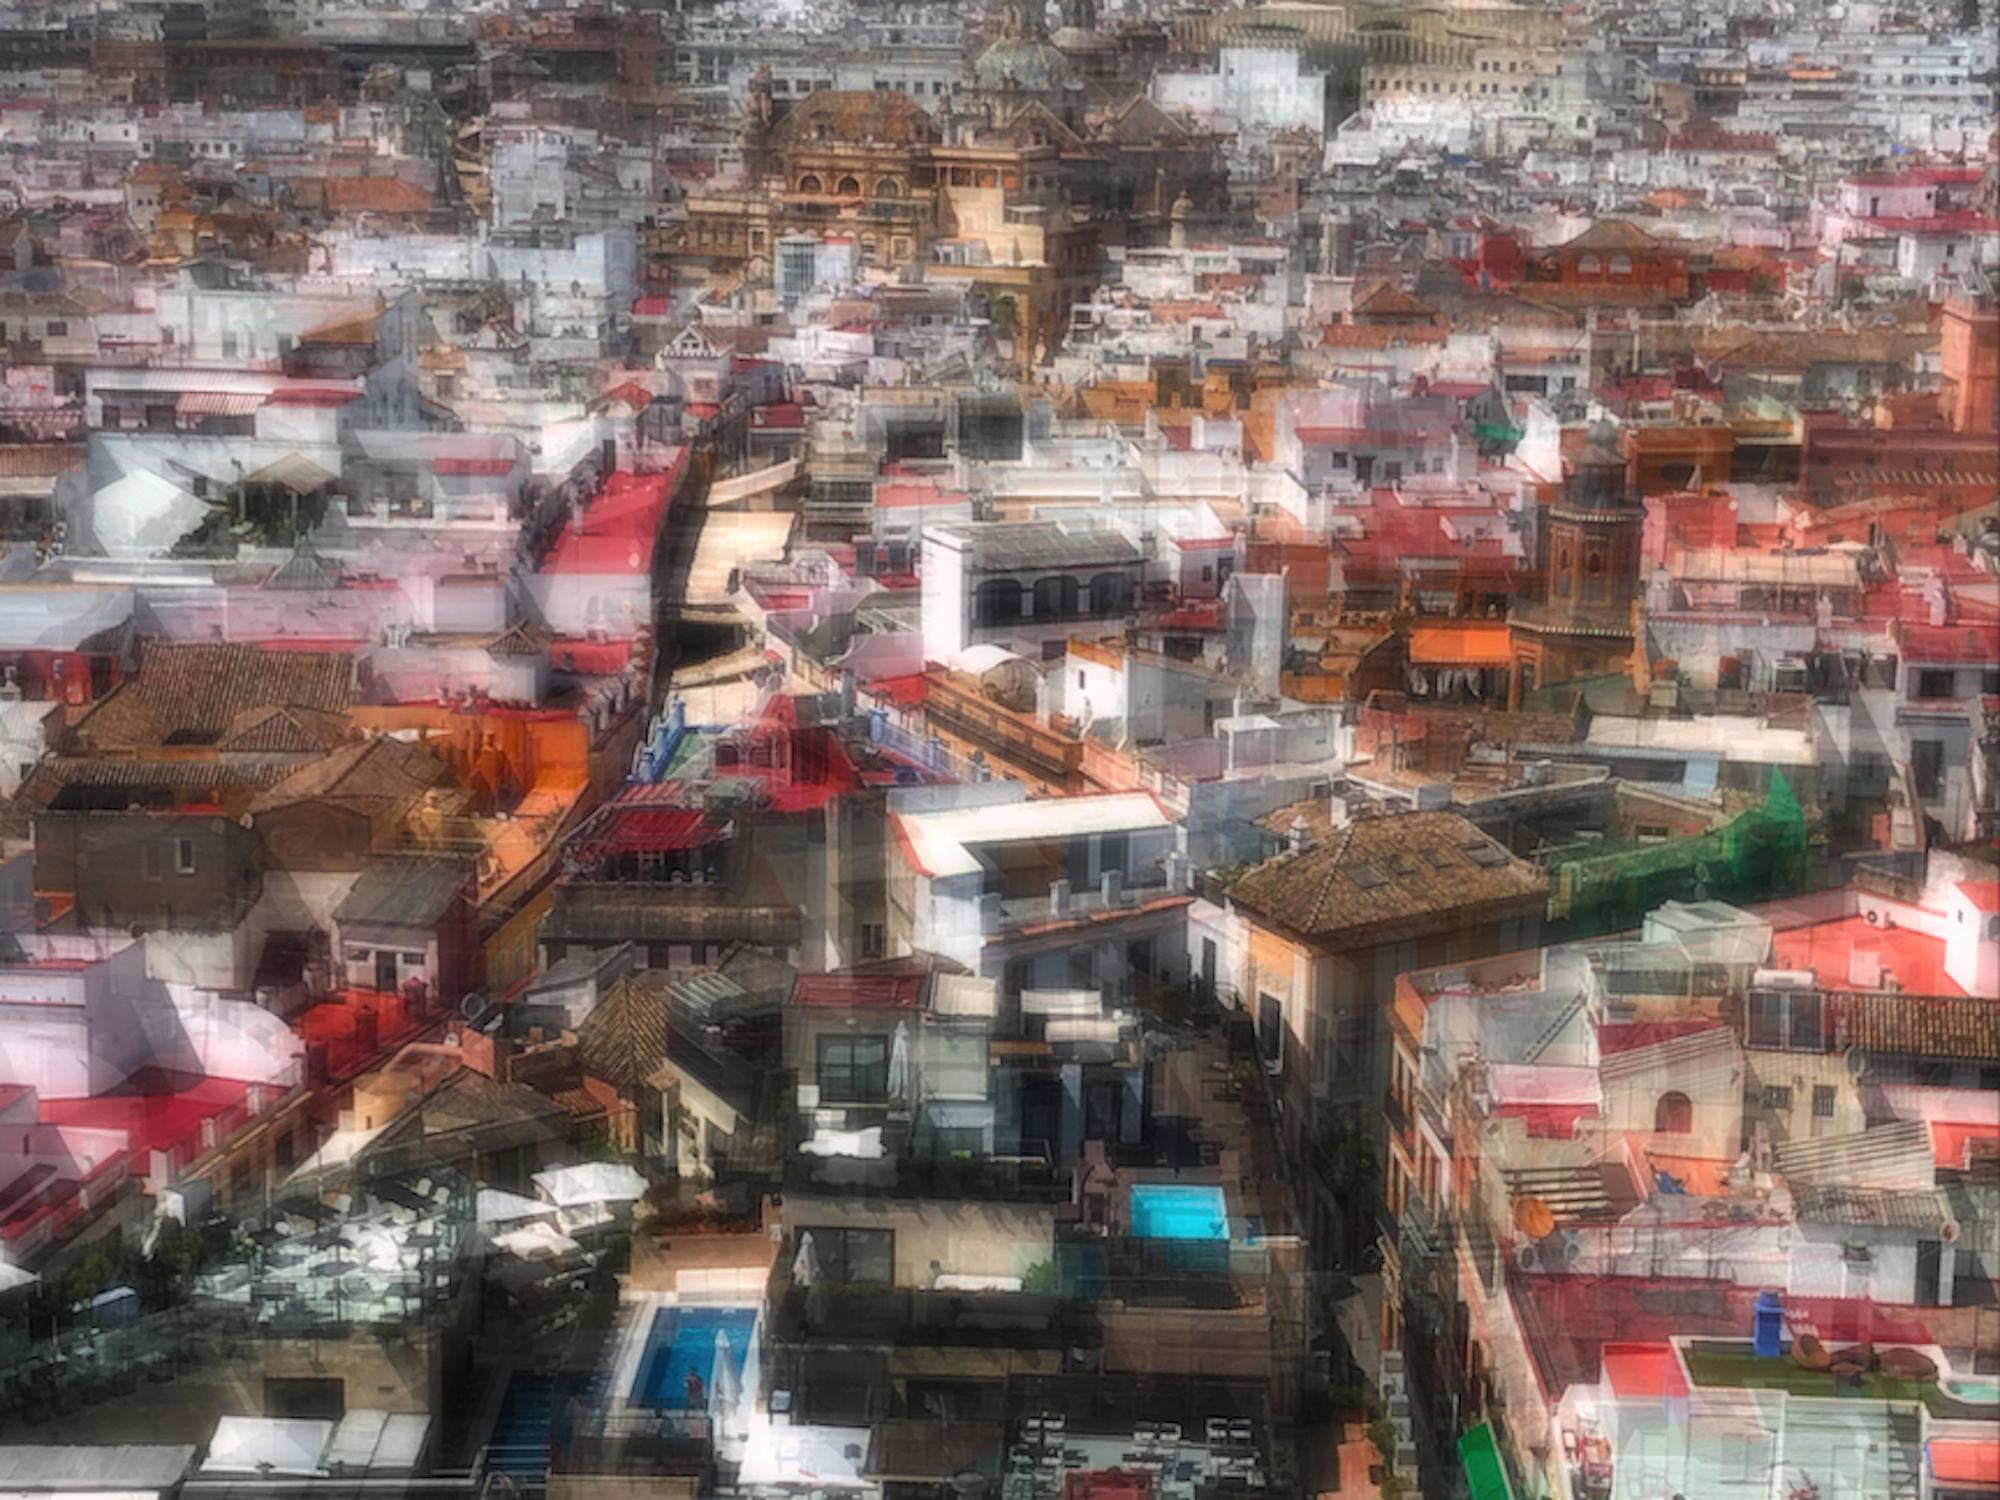 "Seville", landscape, Spain, city, urban, reds, whites, oranges, photograph